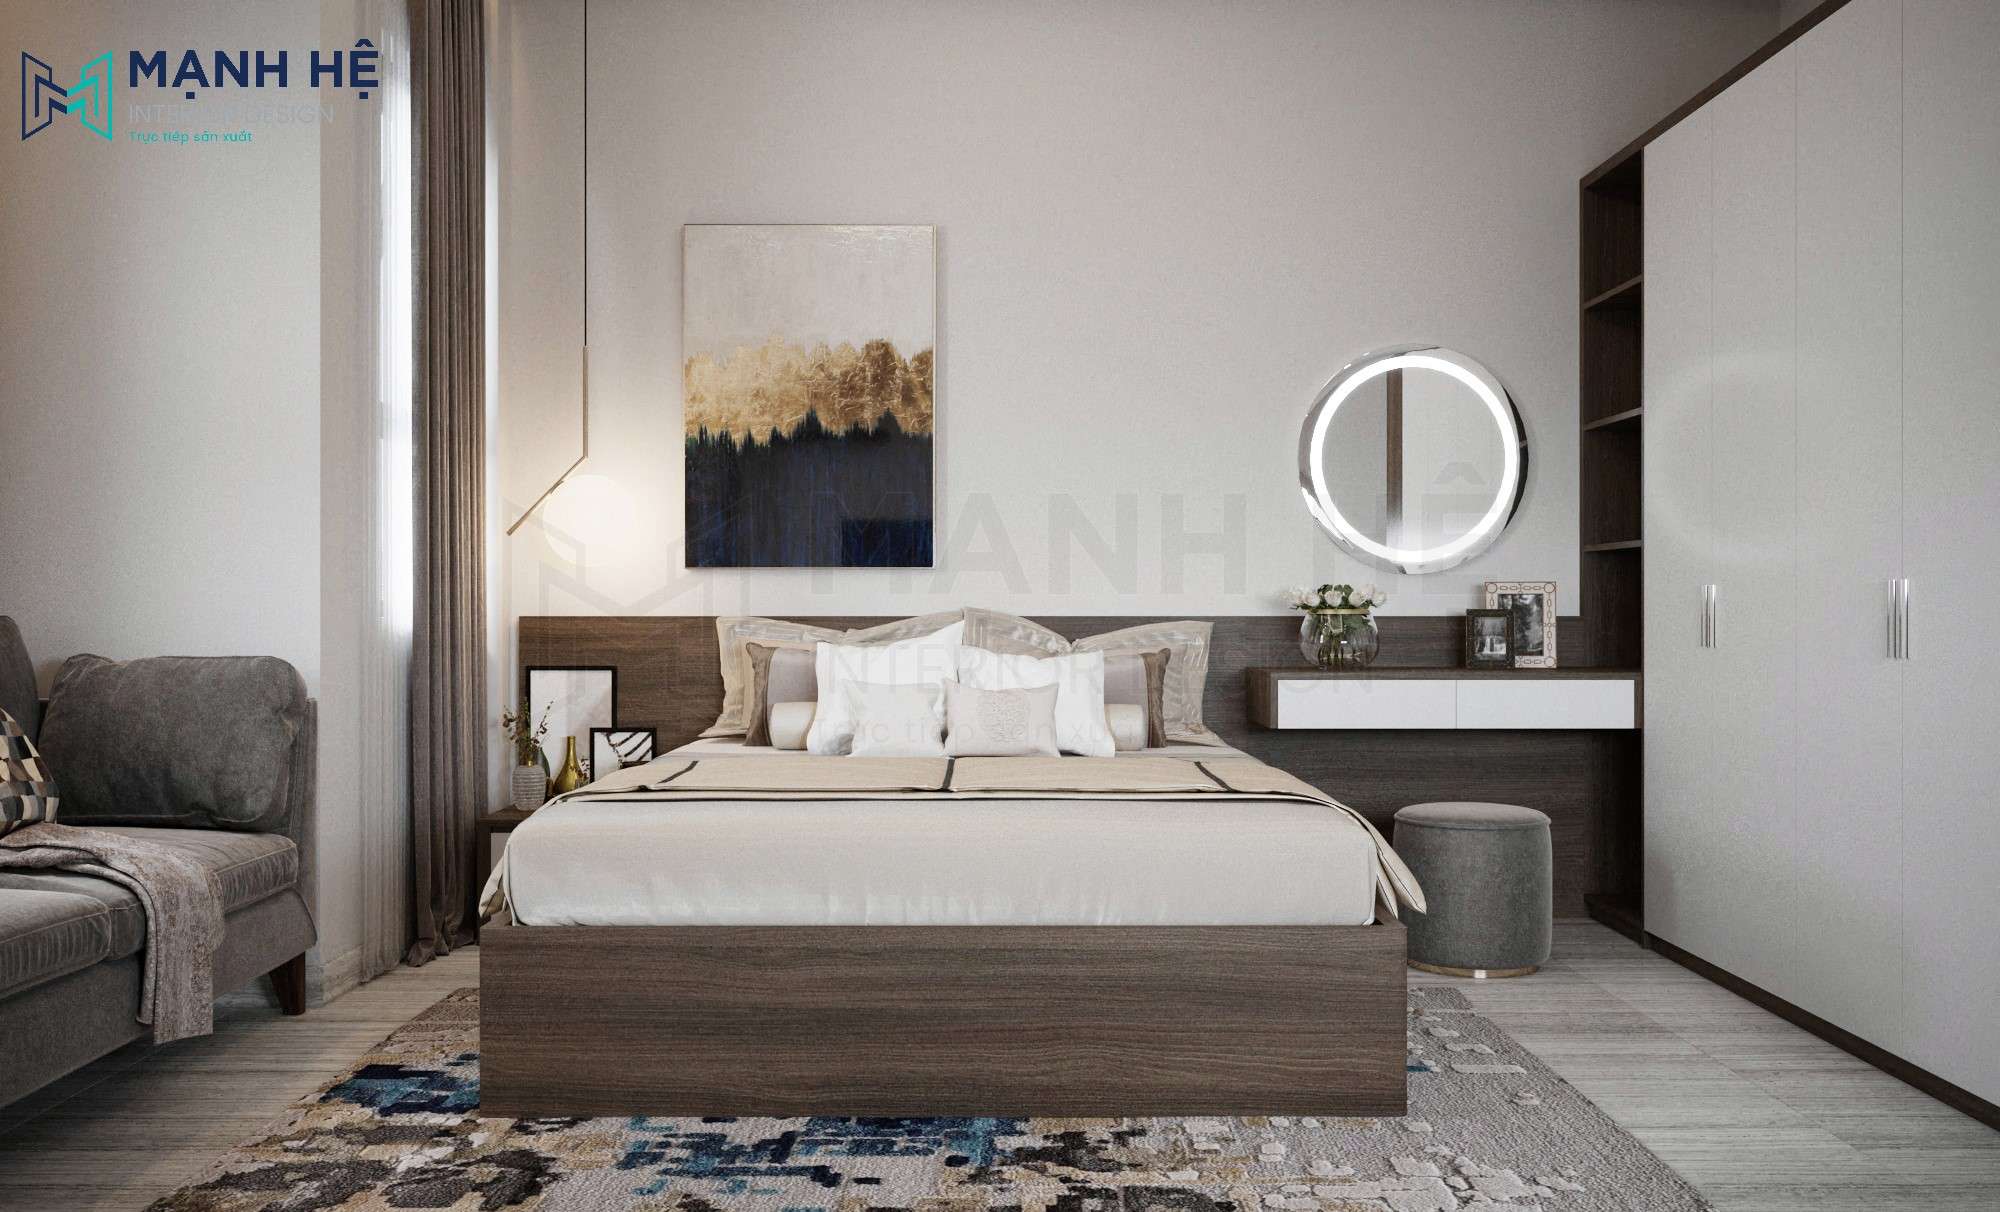 Mẫu giường đôi hiện đại thiết kế gỗ sang trọng cho phòng ngủ